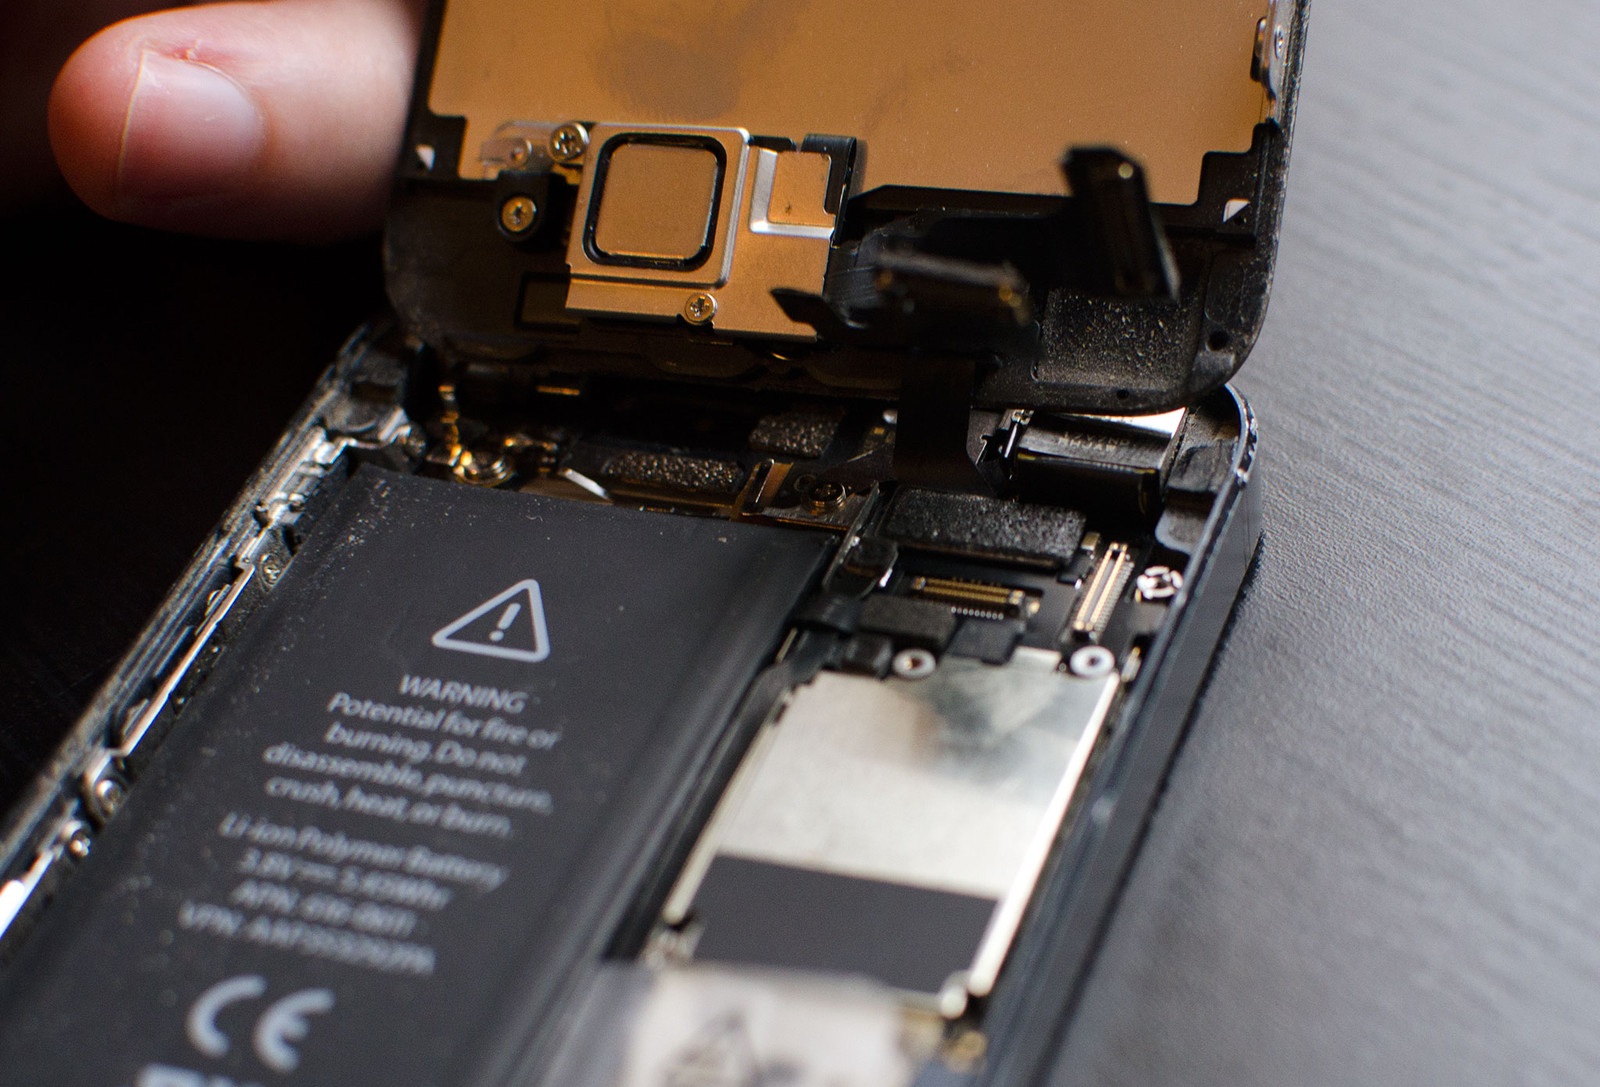 Repair iPhone 5 Screen